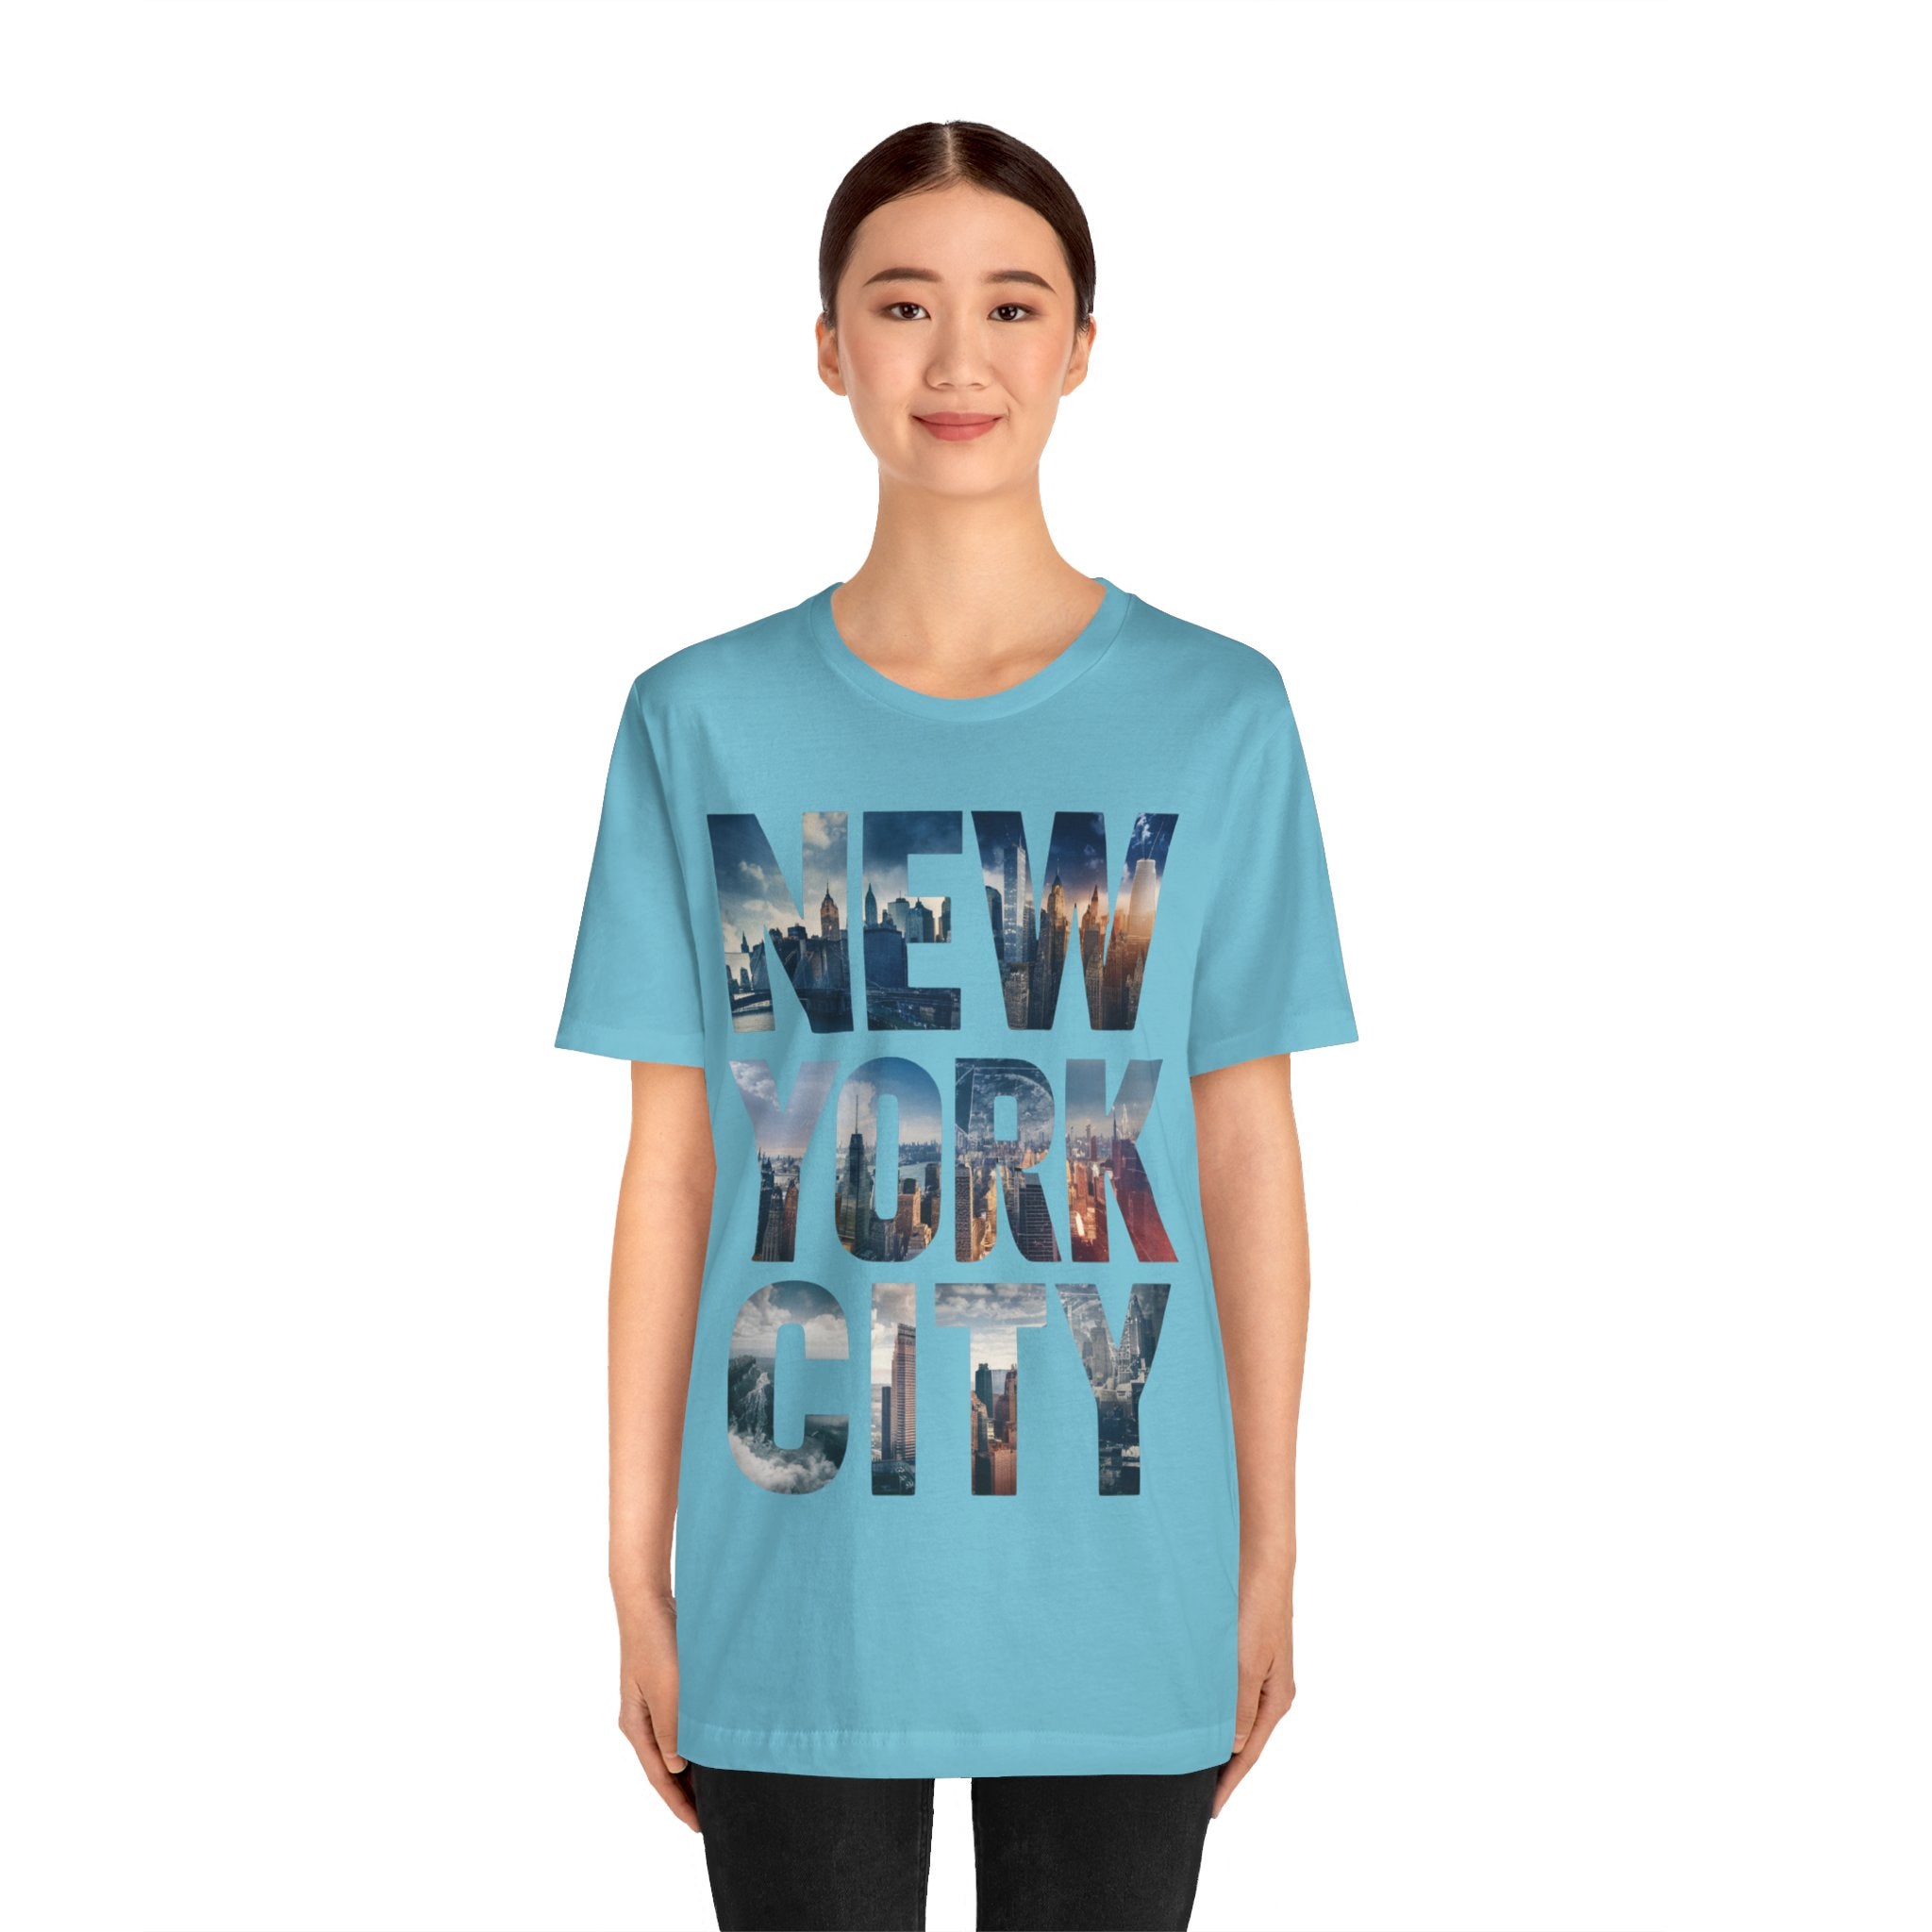 New York City Tee Shirt